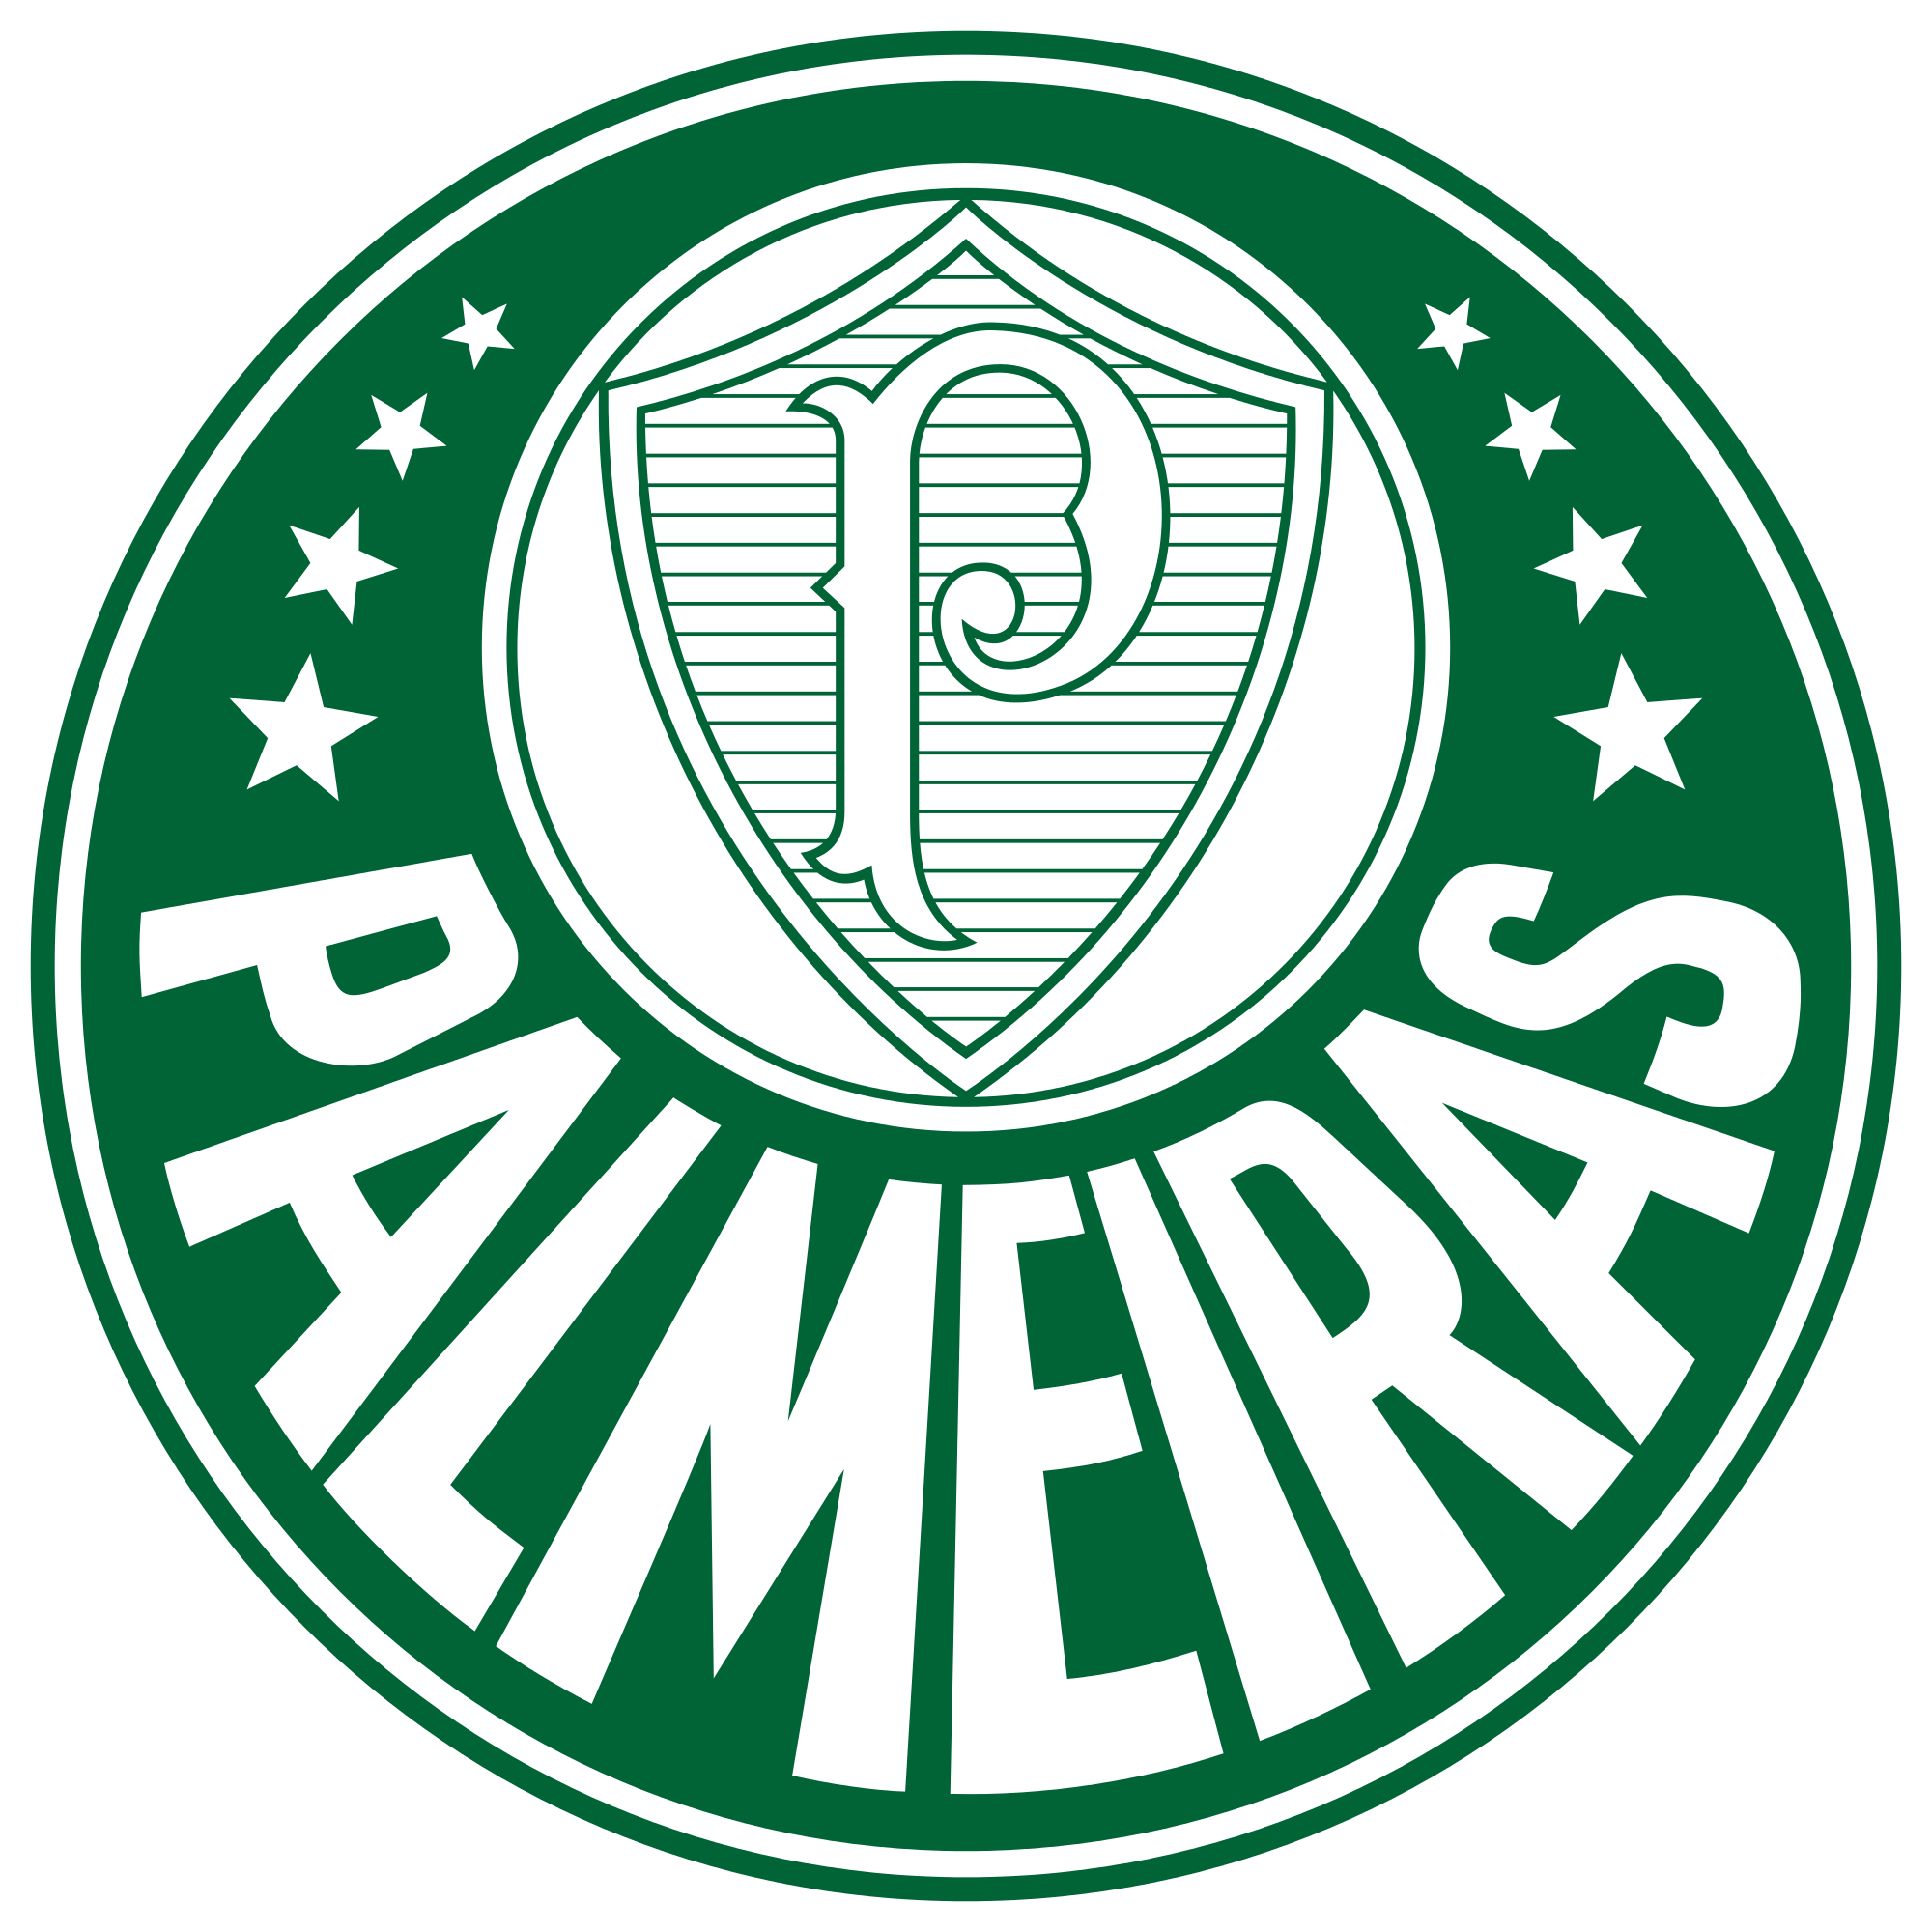 palmeiras logo 3 - Palmeiras Logo